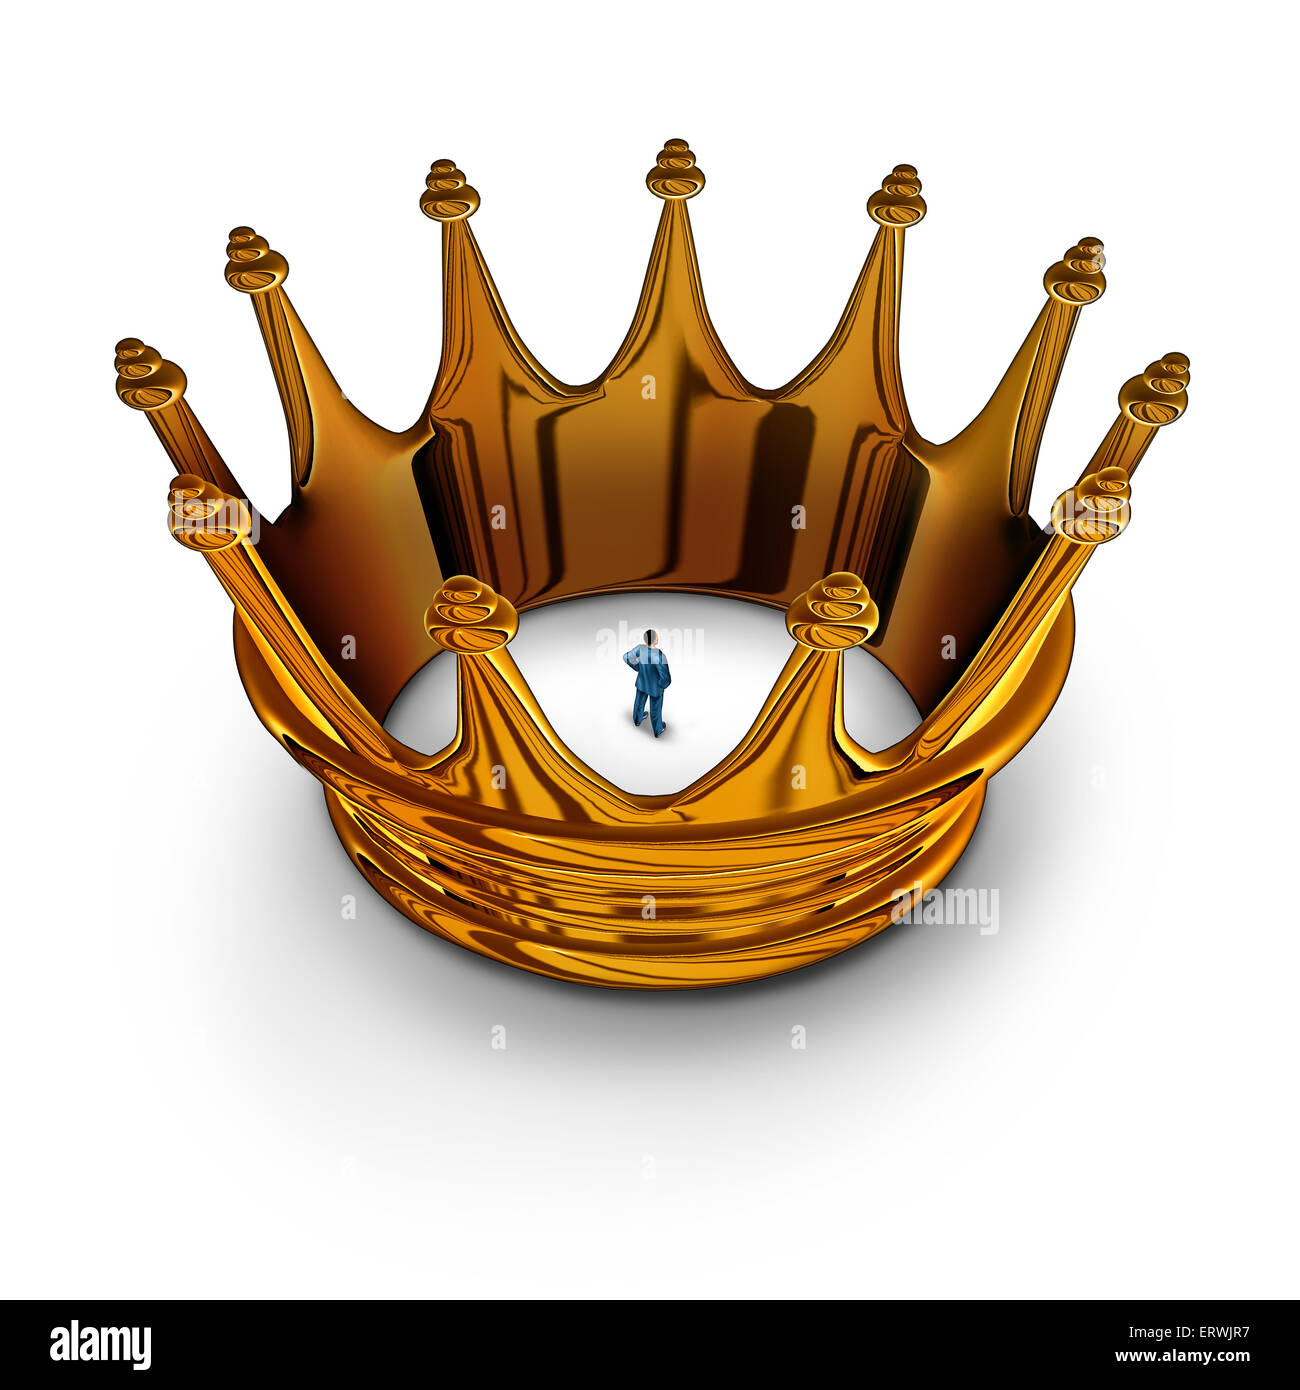 Führung Gefangener Geschäftskonzept als Geschäftsmann gefangen und in eine gold-König Krone als Metapher dafür, dass Management Beschränkungen eingeschränkt und Befugnisse viel zu tun begrenzt. Stockfoto